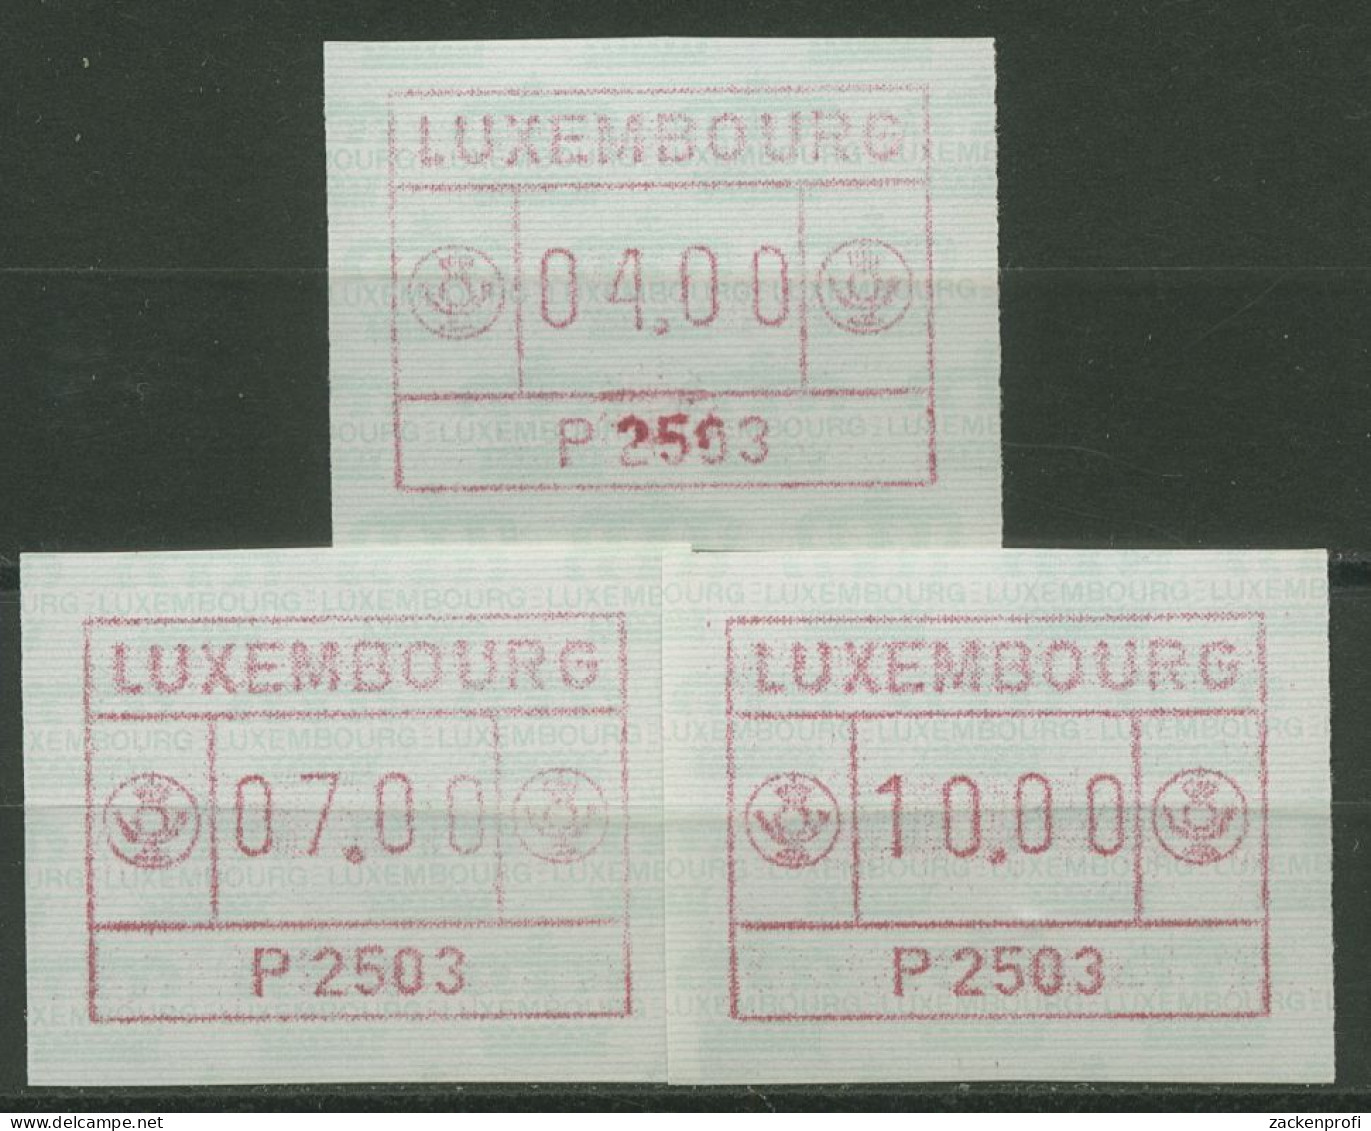 Luxemburg 1983 Automatenmarke Automat P 2503 Satz 1.3 B S1 Postfrisch - Postage Labels